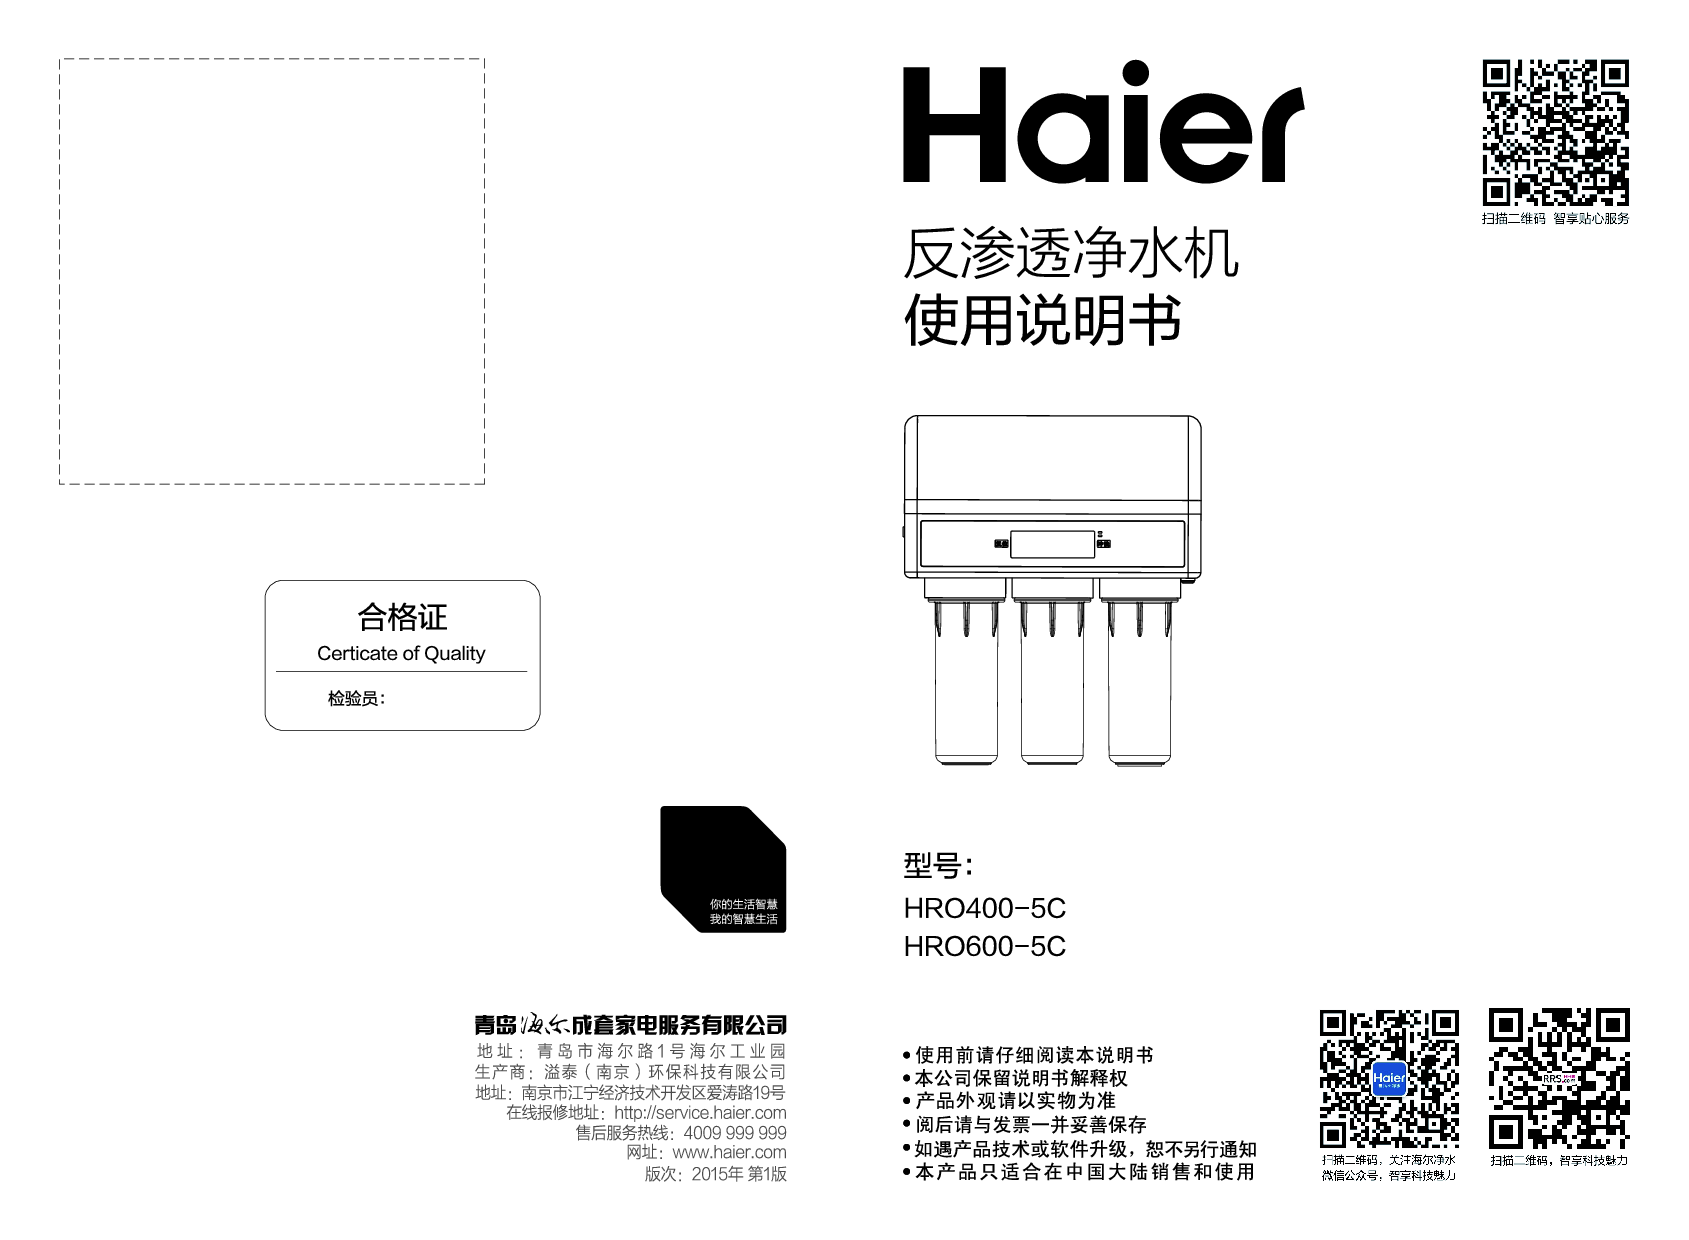 海尔 Haier HRO400-5C 使用说明书 封面